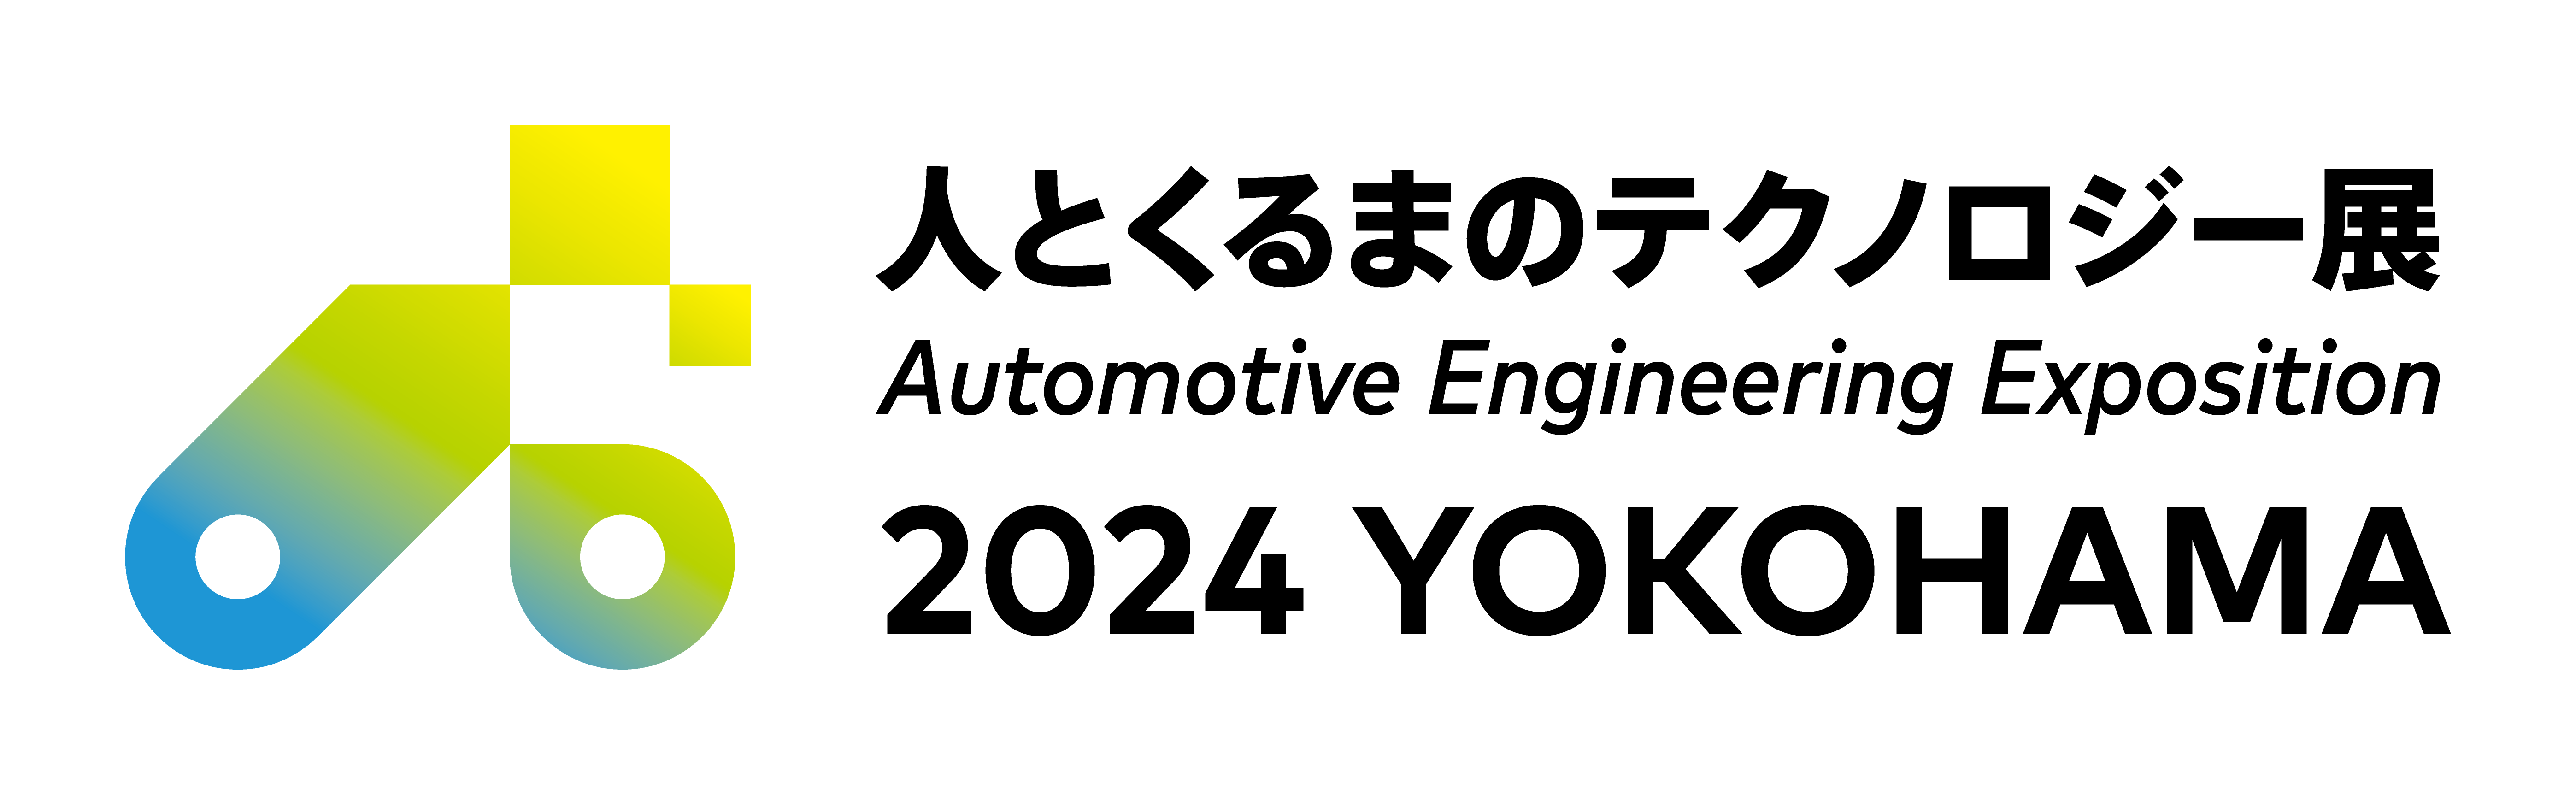 人とくるまのテクノロジー展2024 YOKOHAMA」に出展します。 - 株式会社大手技研 | 計測器・校正